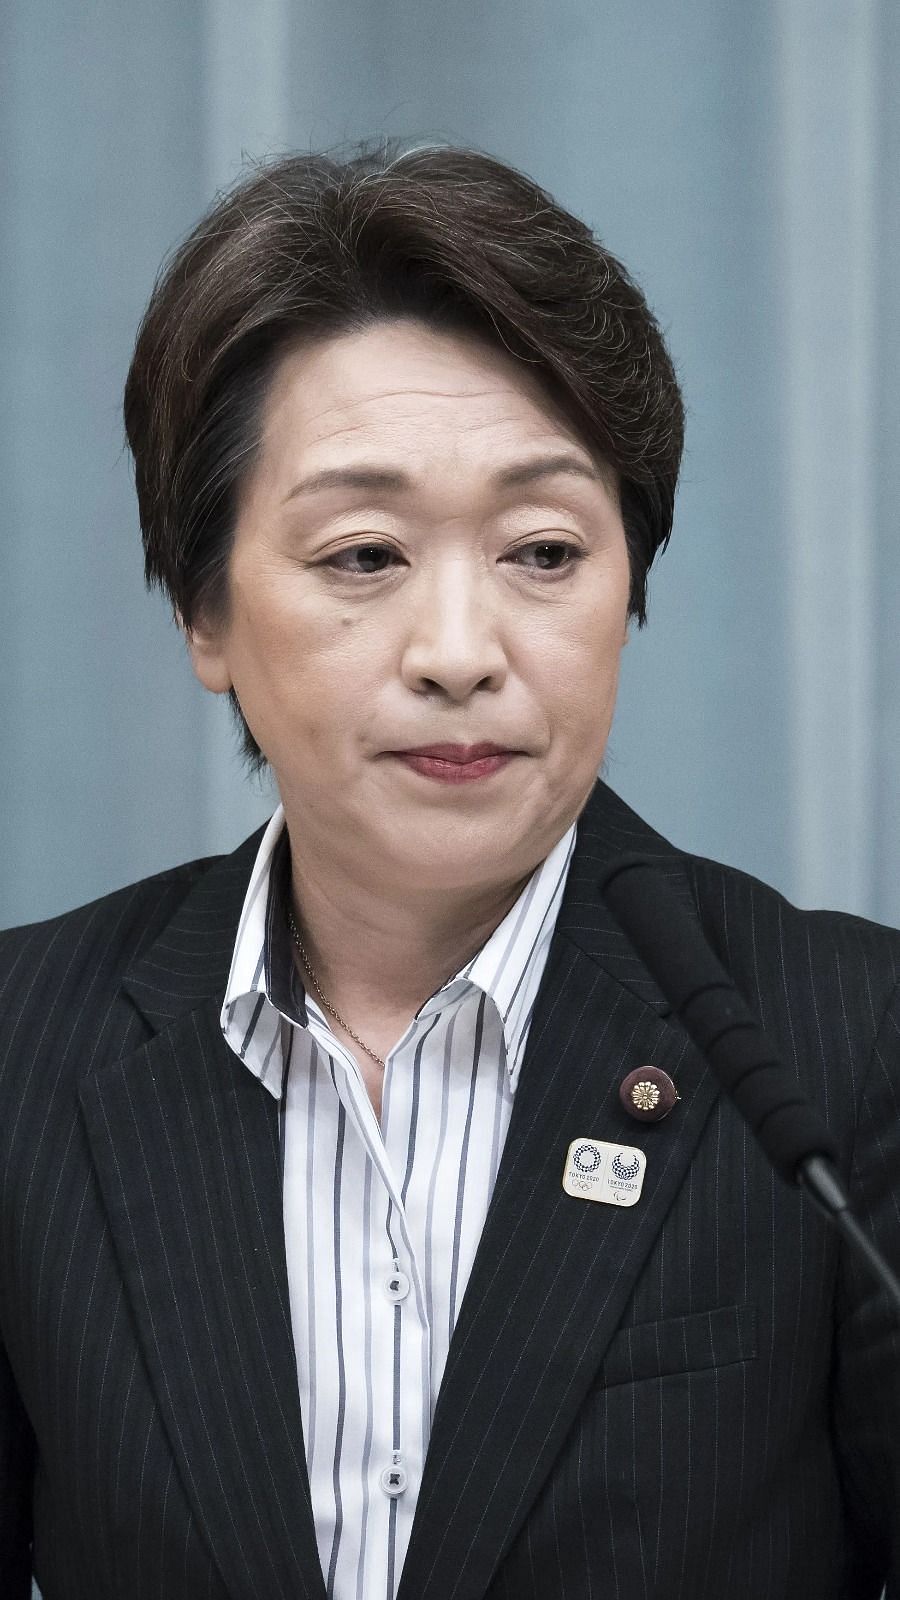 Tokyo Olympics: Seiko Hashimoto takes over as new president